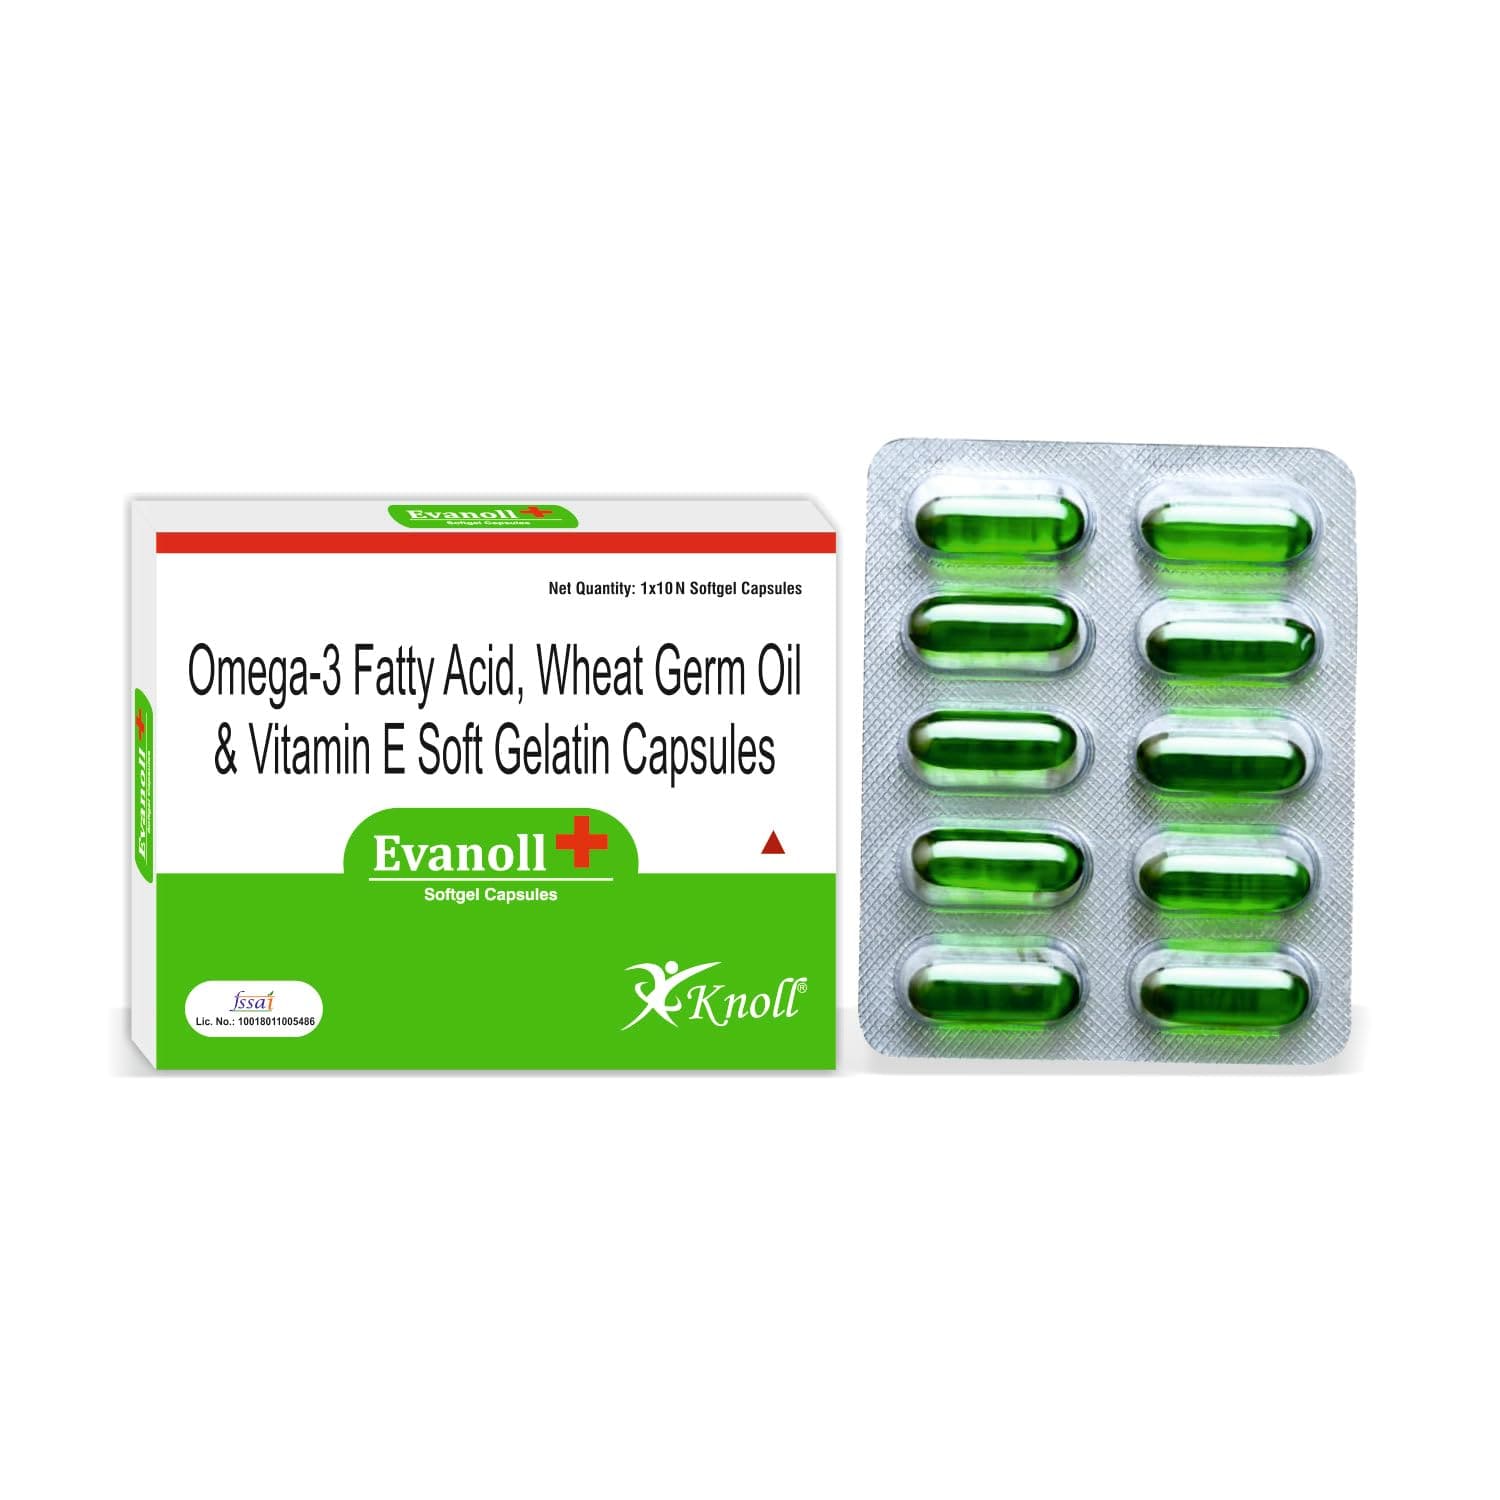 Evanol Softgel Capsules | Include Omega-3, Wheat Germ Oil, Vitamin E